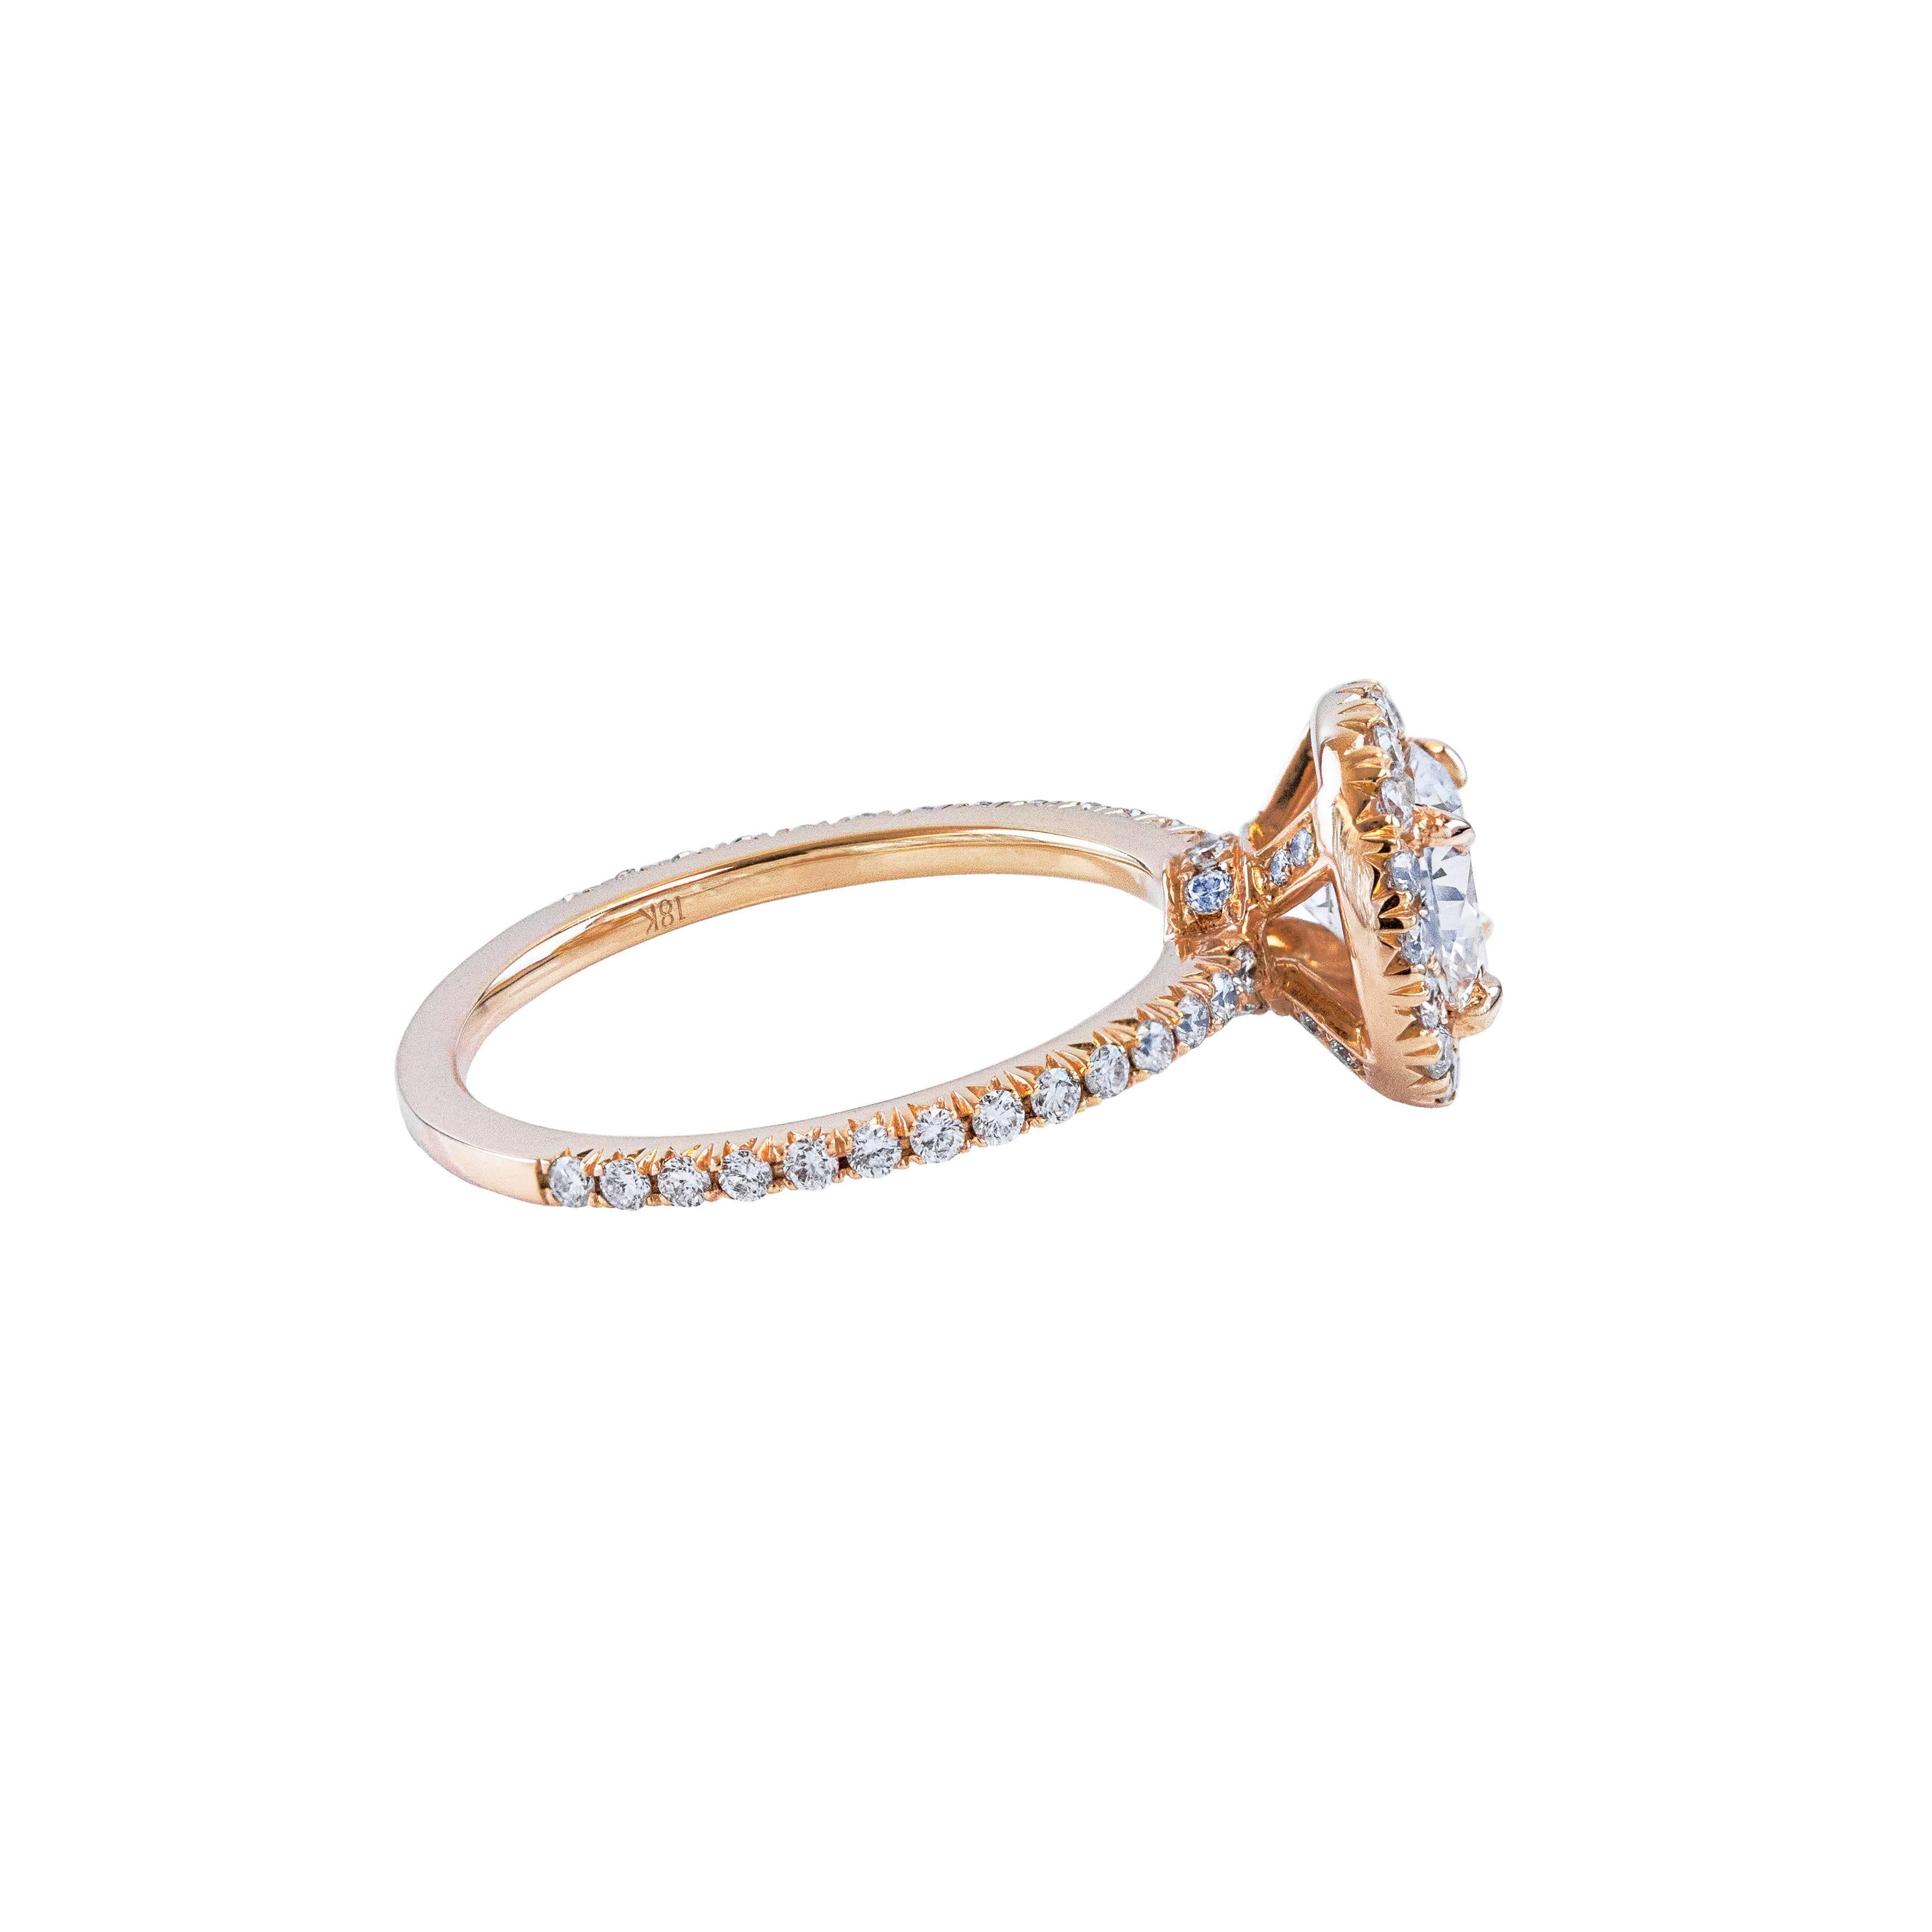 Dieser Ring verfügt über eine gut gearbeitete 1,07 Karat brillanten runden Diamanten Mittelstein zertifiziert durch EGL als E Farbe und VS2 in Klarheit. Umgeben von runden Brillanten in einer Halo-Fassung. Der Schaft aus 18 Karat Roségold ist mit